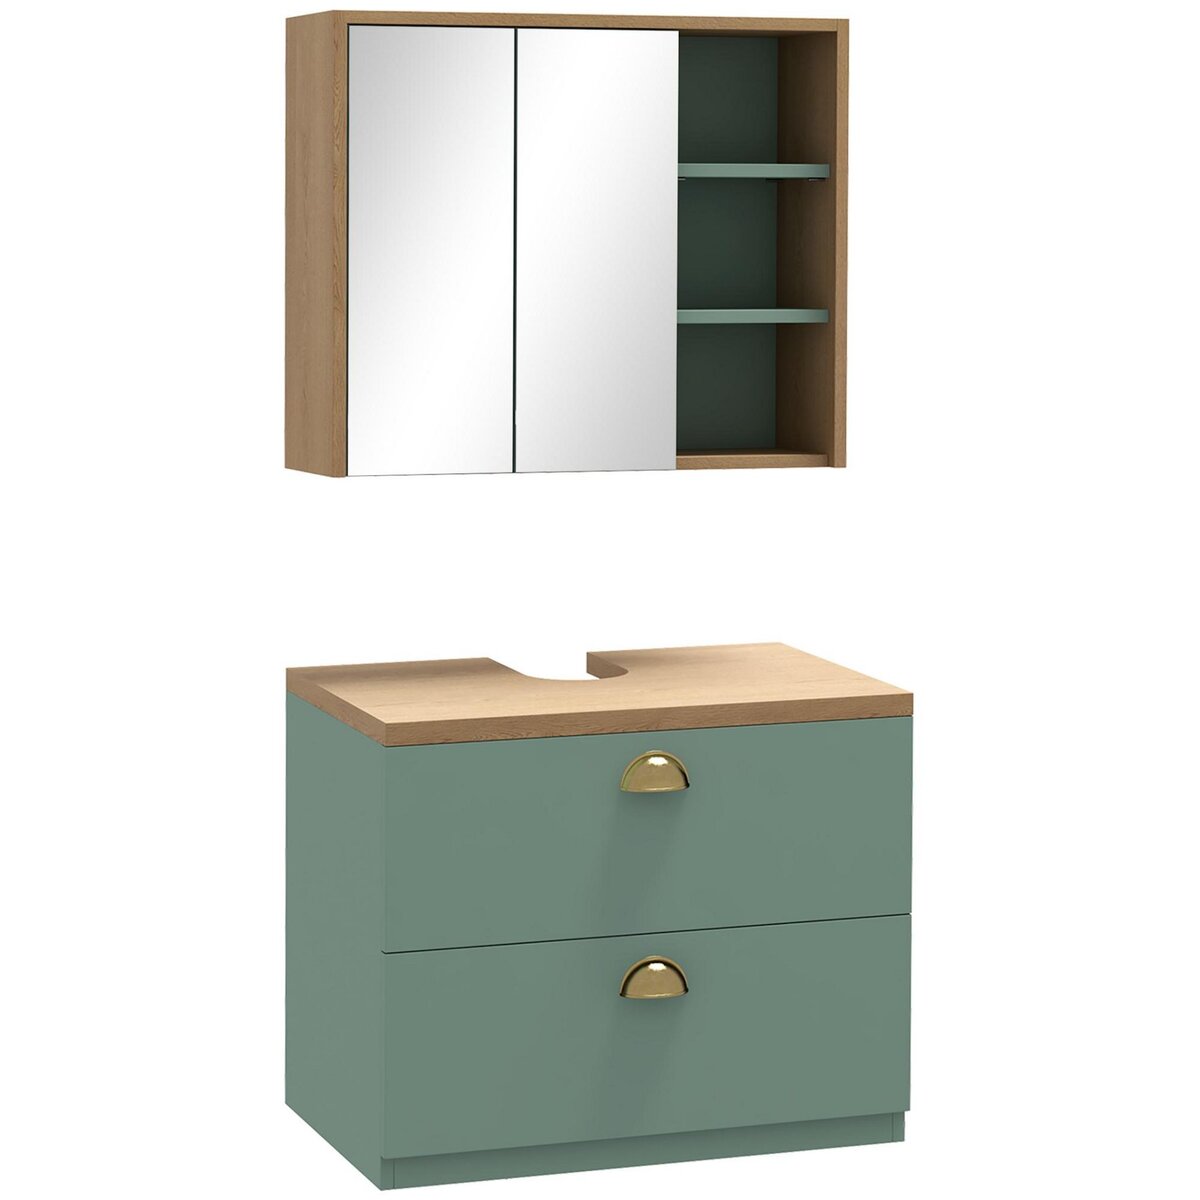 KLEANKIN Ensemble 2 meubles salle de bain - meuble sous-vasque suspendu, armoire murale miroir - aspect bois clair vert